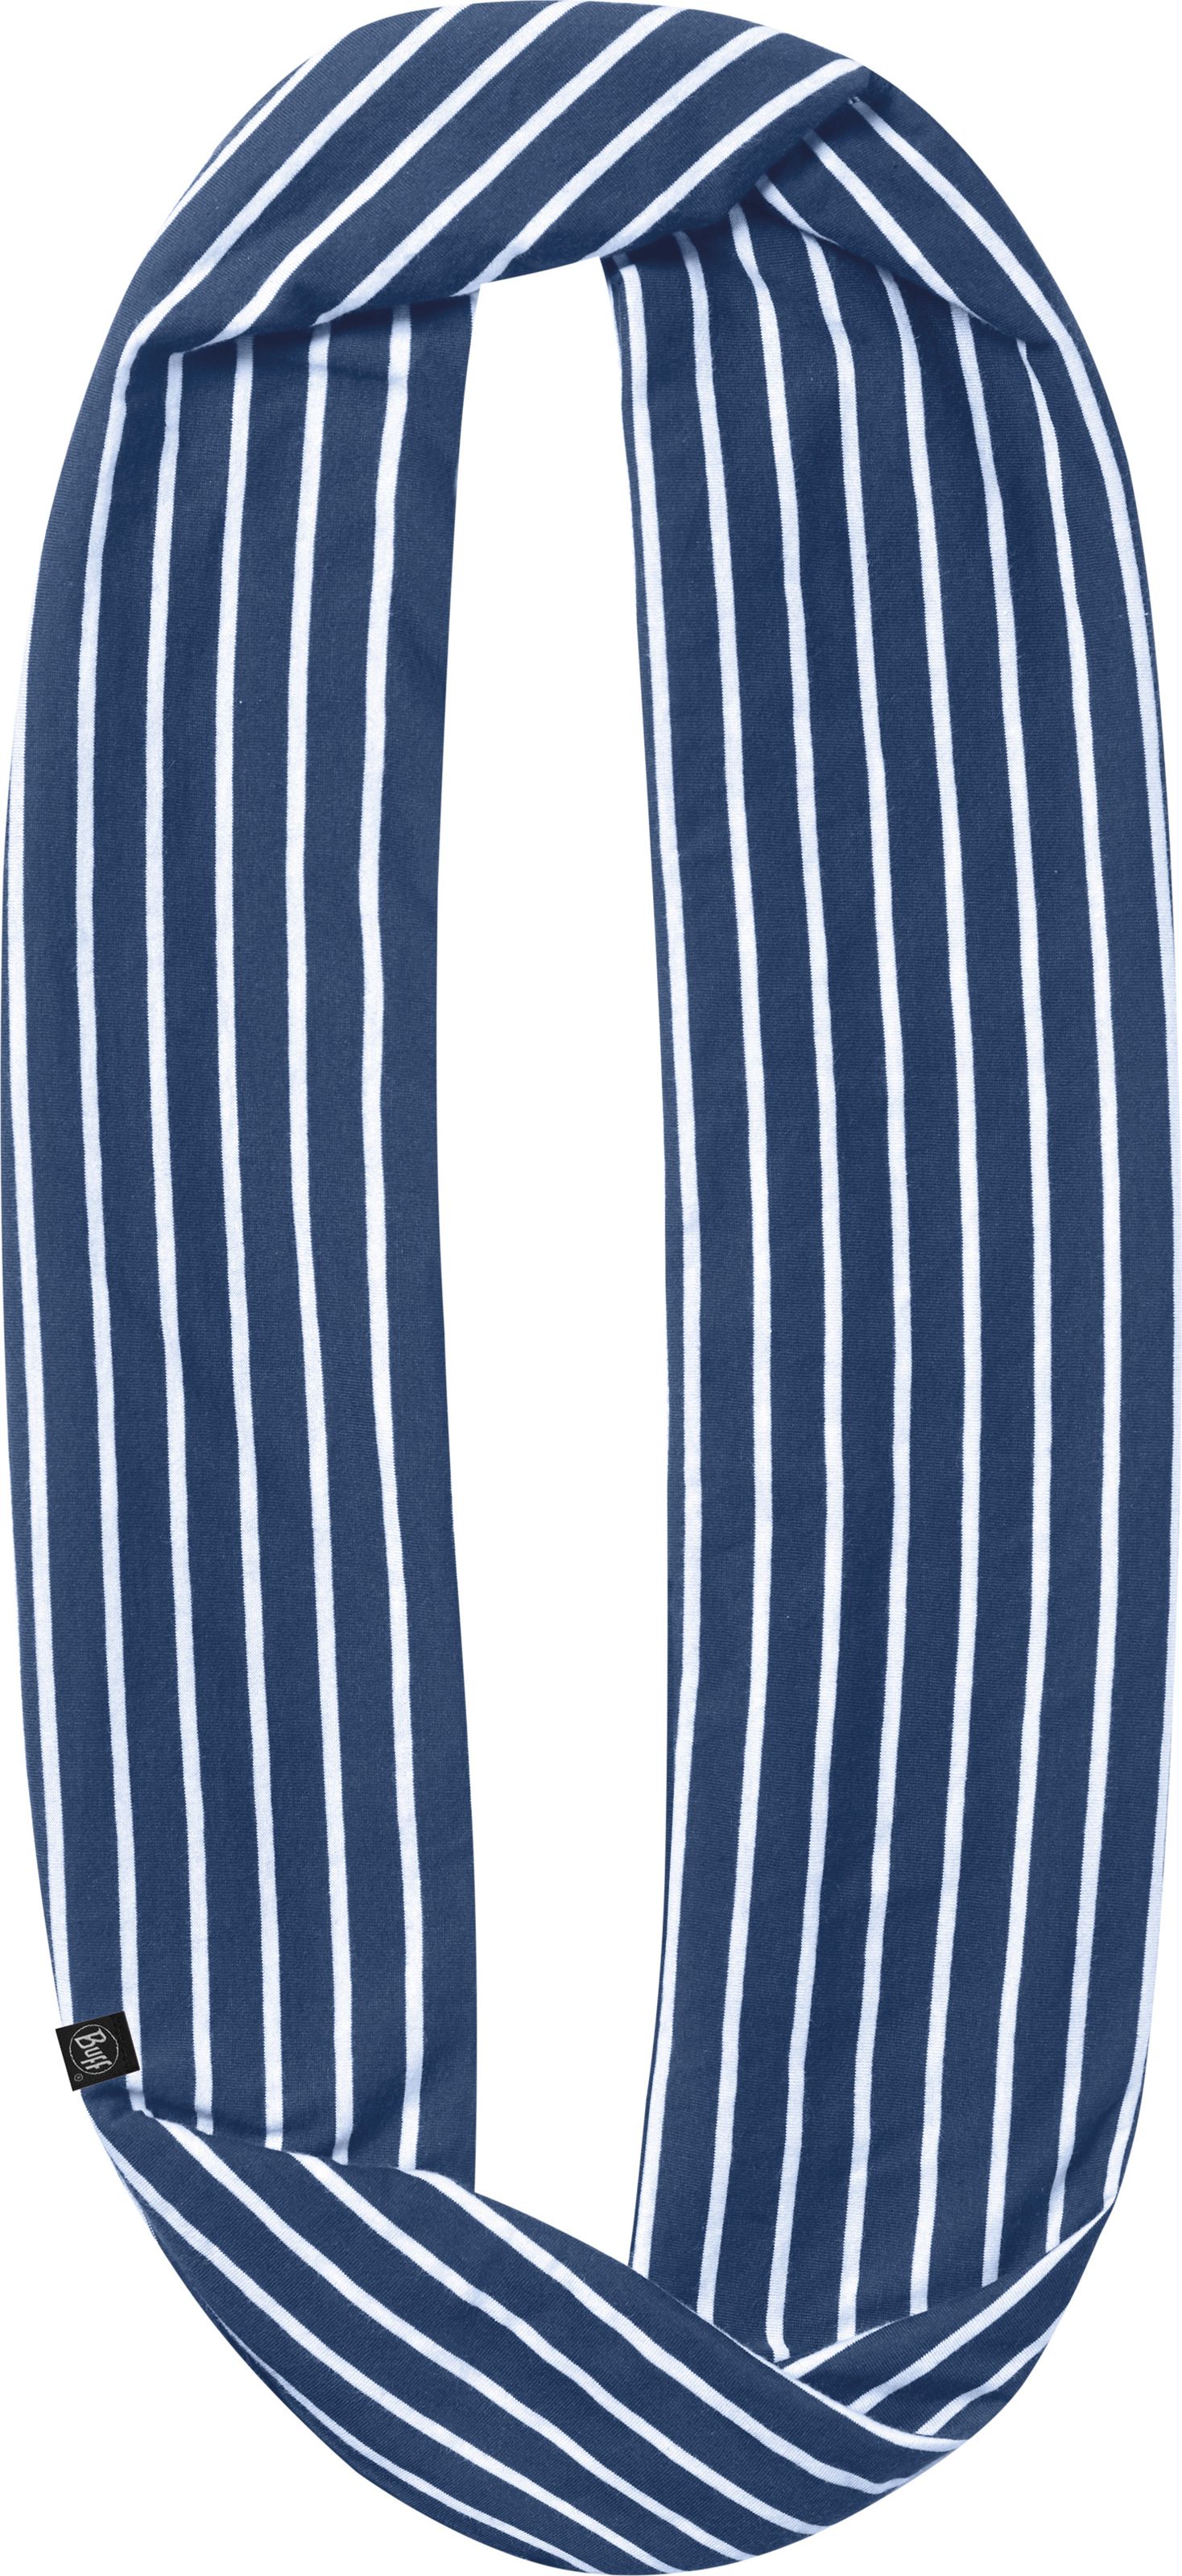 Шарф Buff Cotton Infinity Denim Stripes, цвет: деним. 115015.788.10.00. Размер универсальный